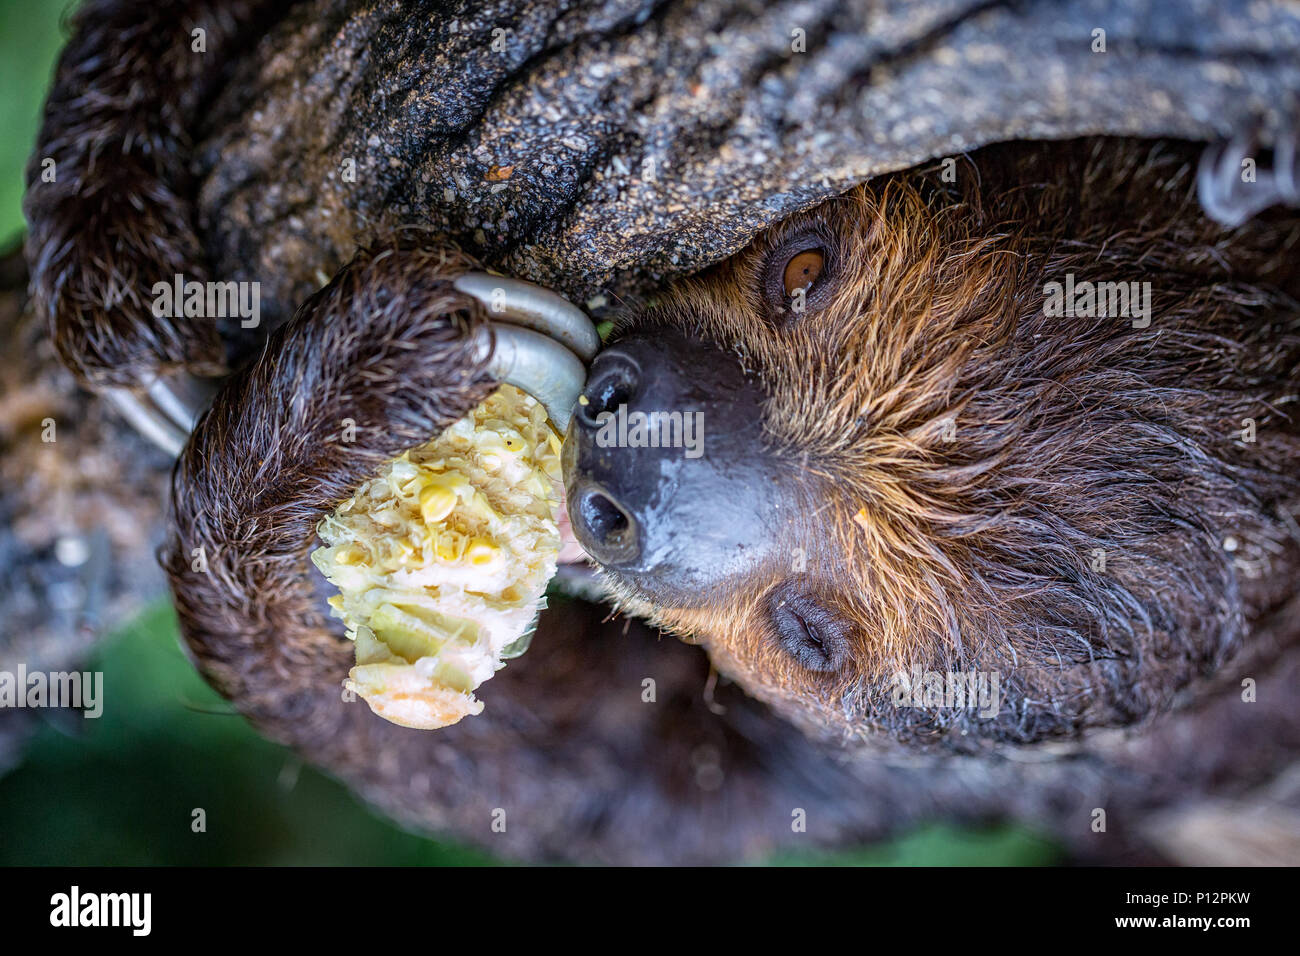 Megalonychidae; (two-toed sloth), Singapore Zoo, Singapore Stock Photo